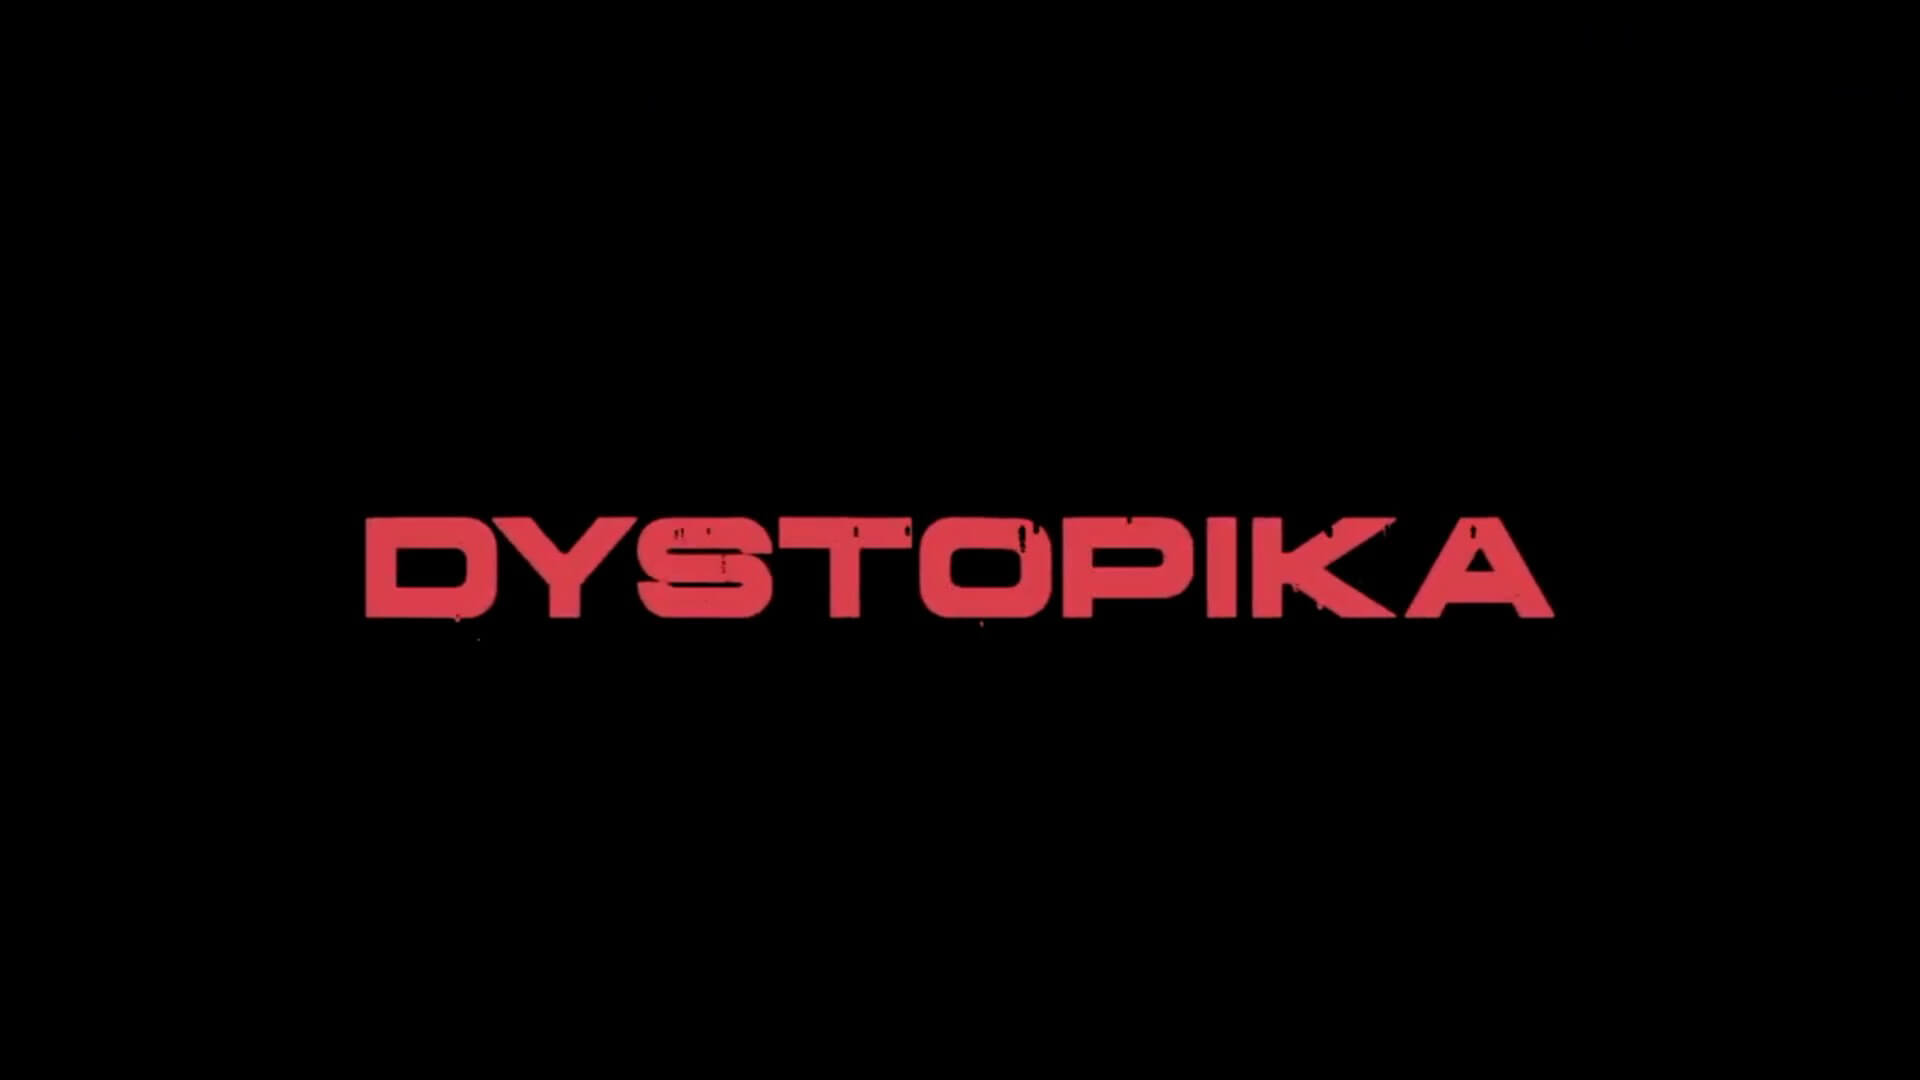 Dystopika Banner Image